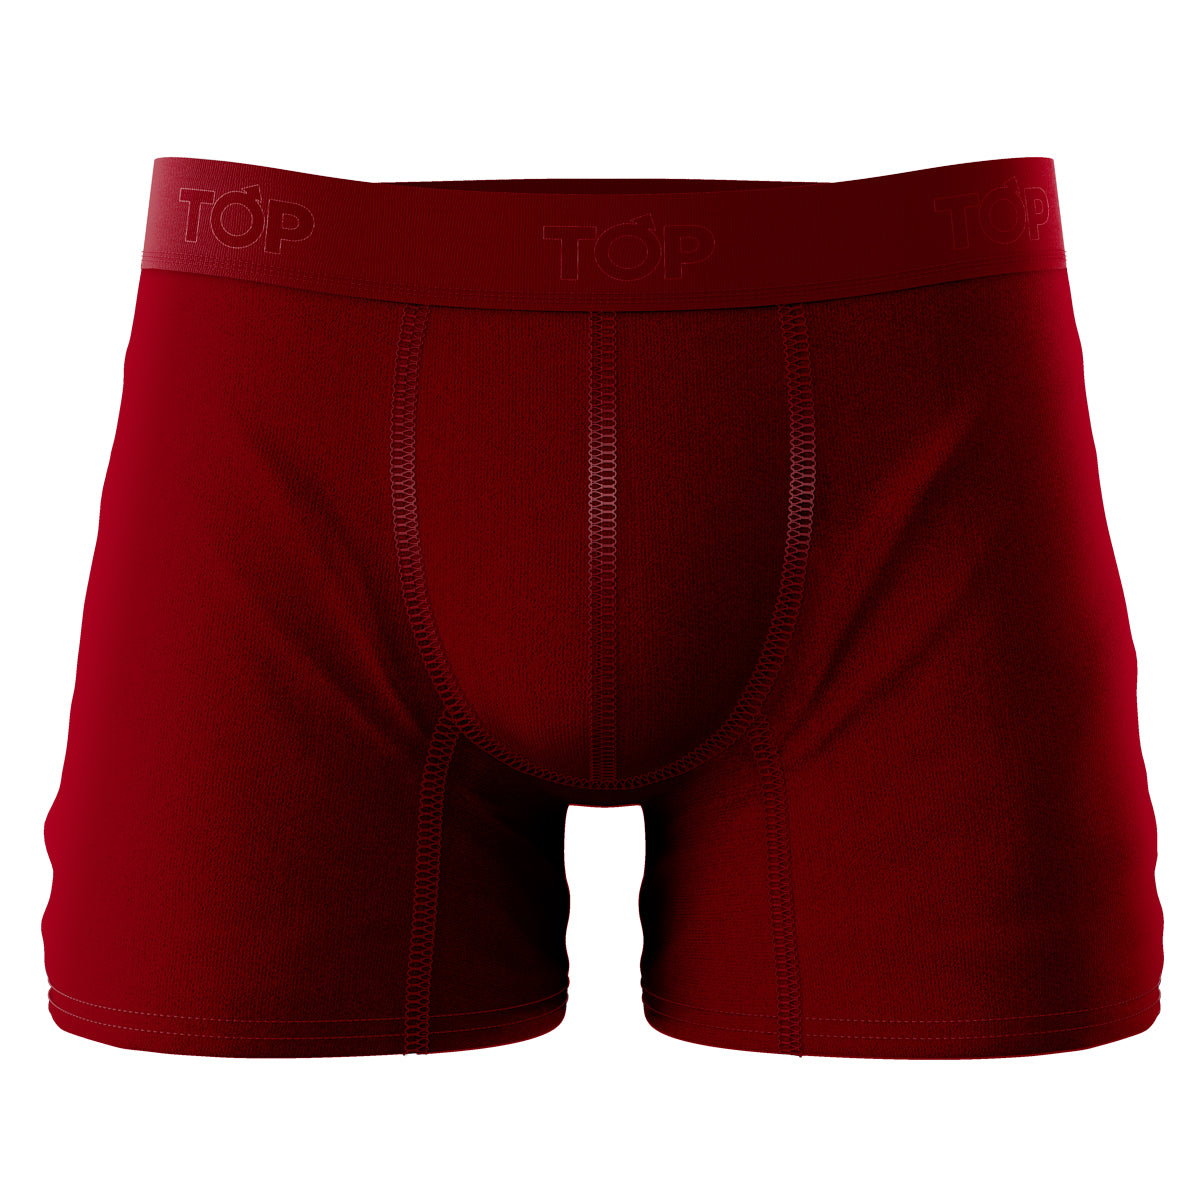 Bóxer Medio Mujer Modal Pack 3 DC C5 - Top Underwear